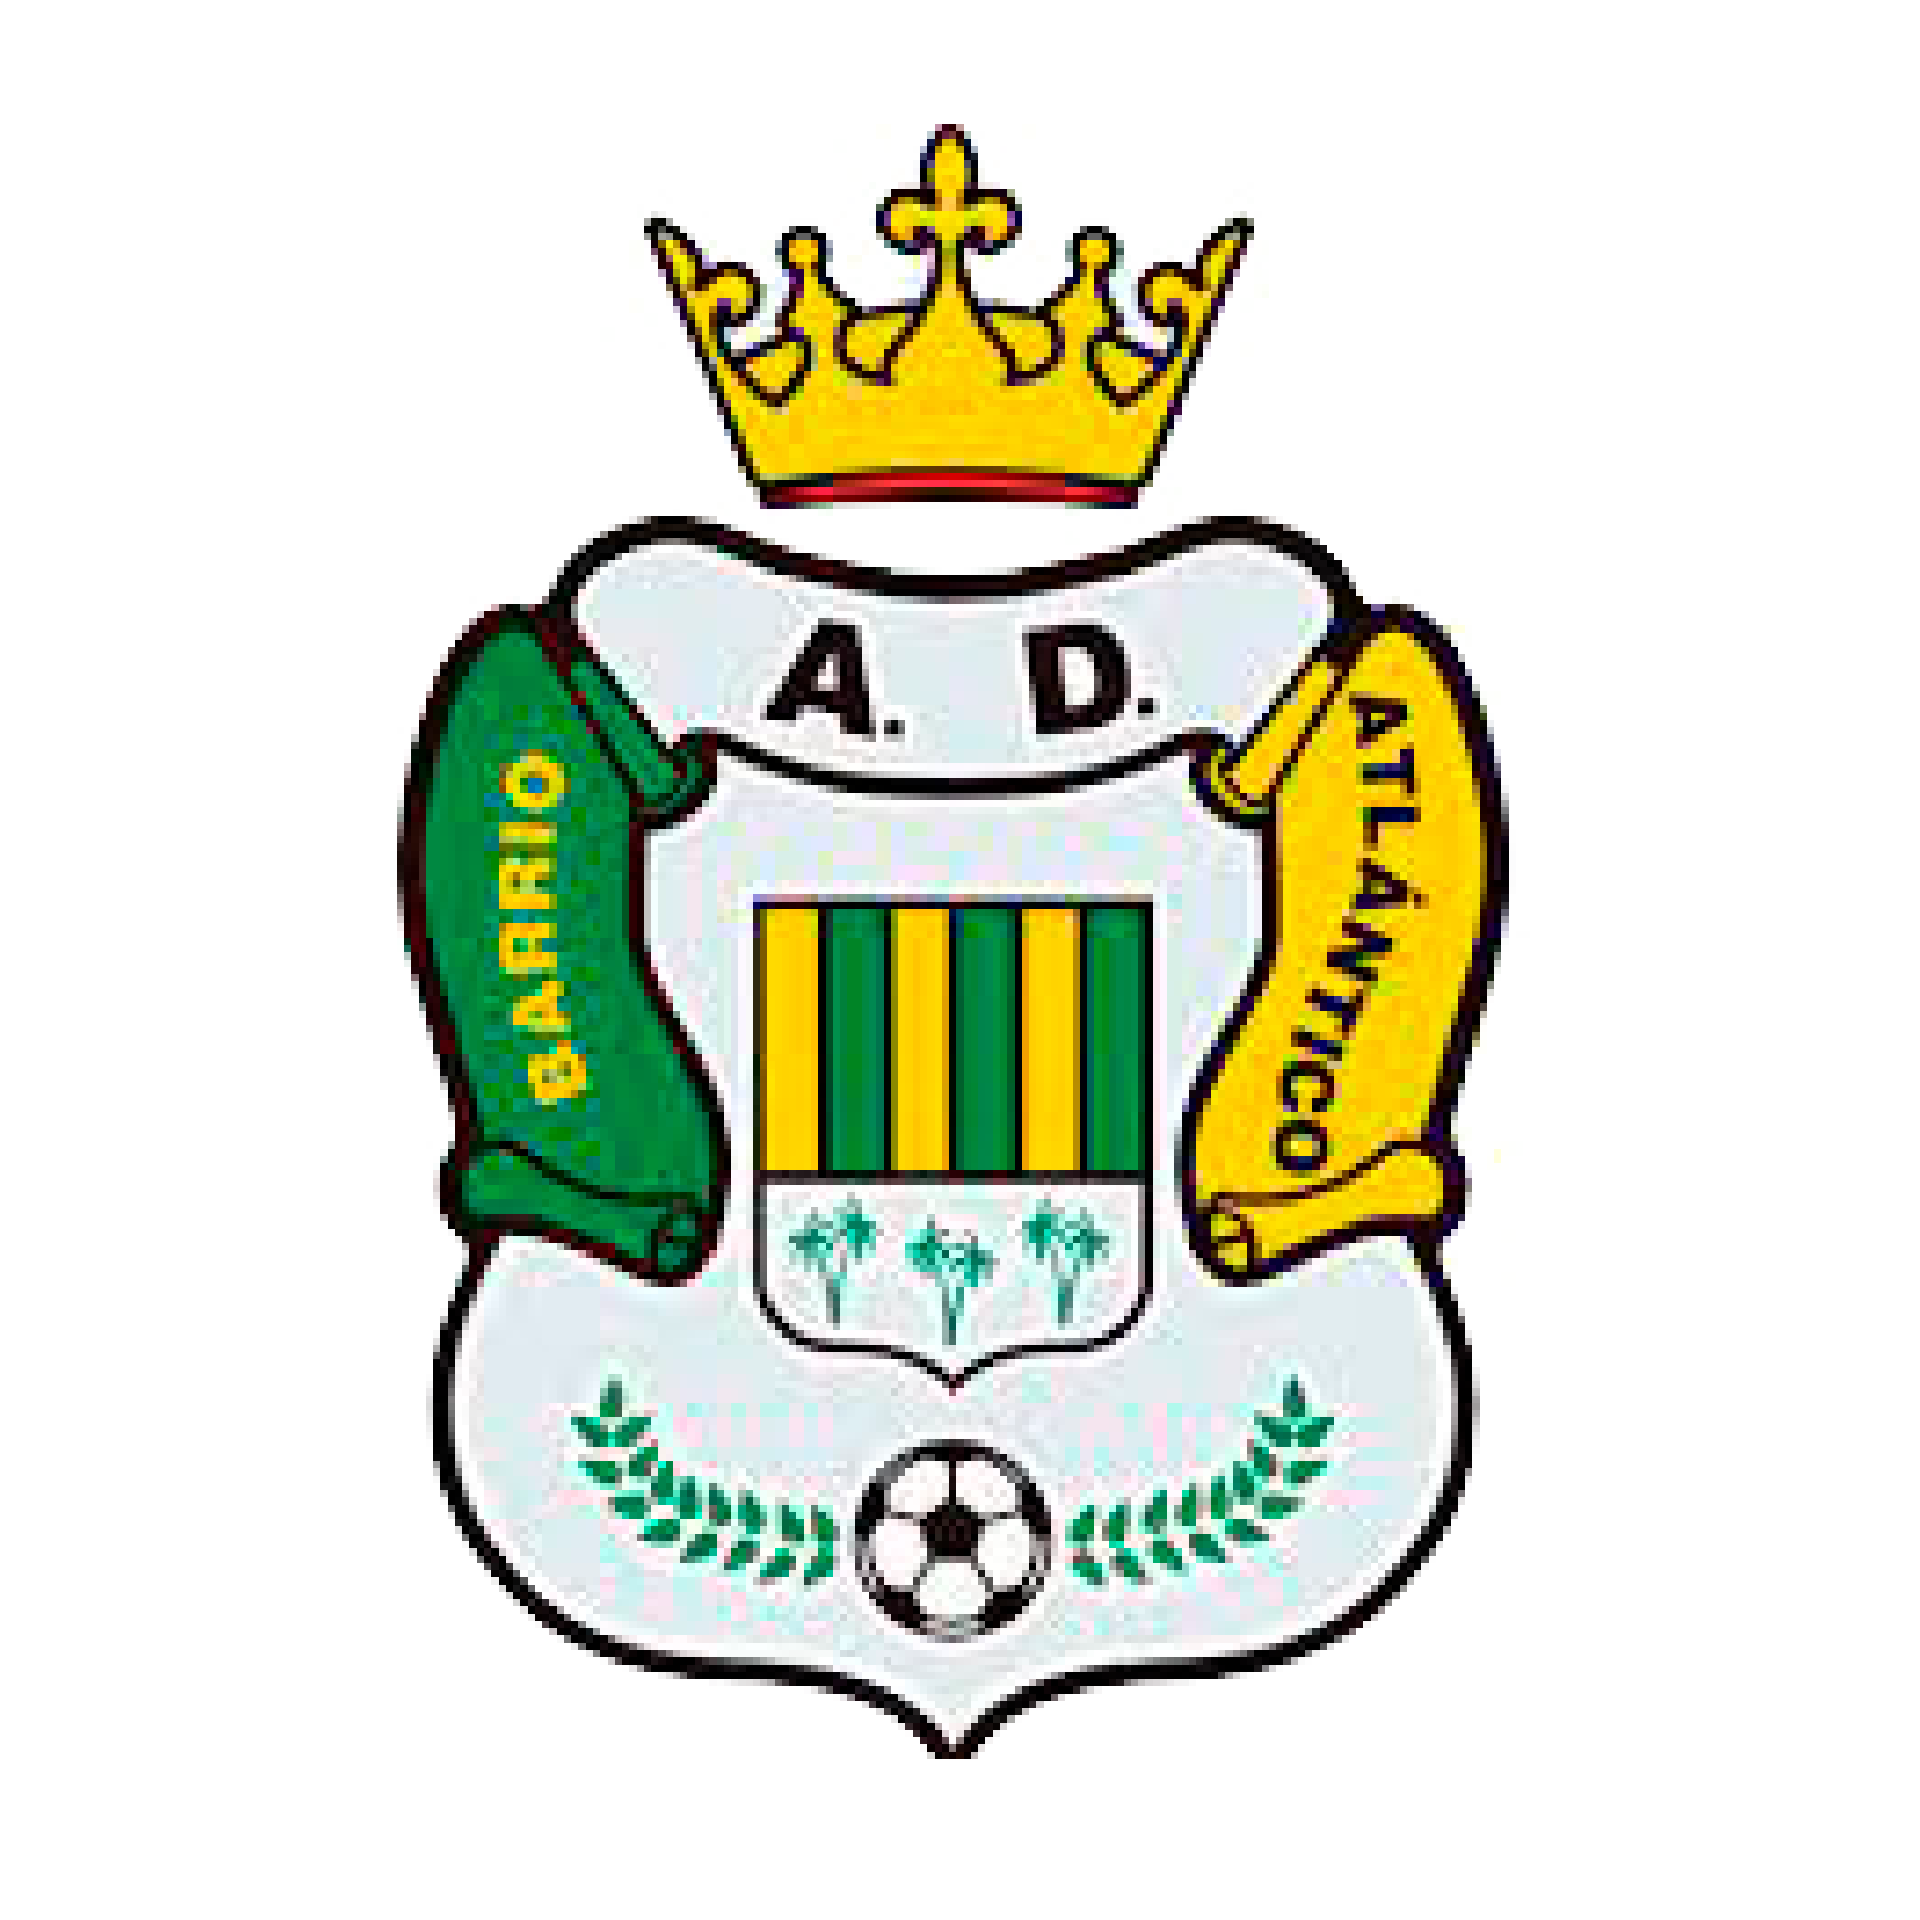 Asociación Deportiva Barrio Atlántico